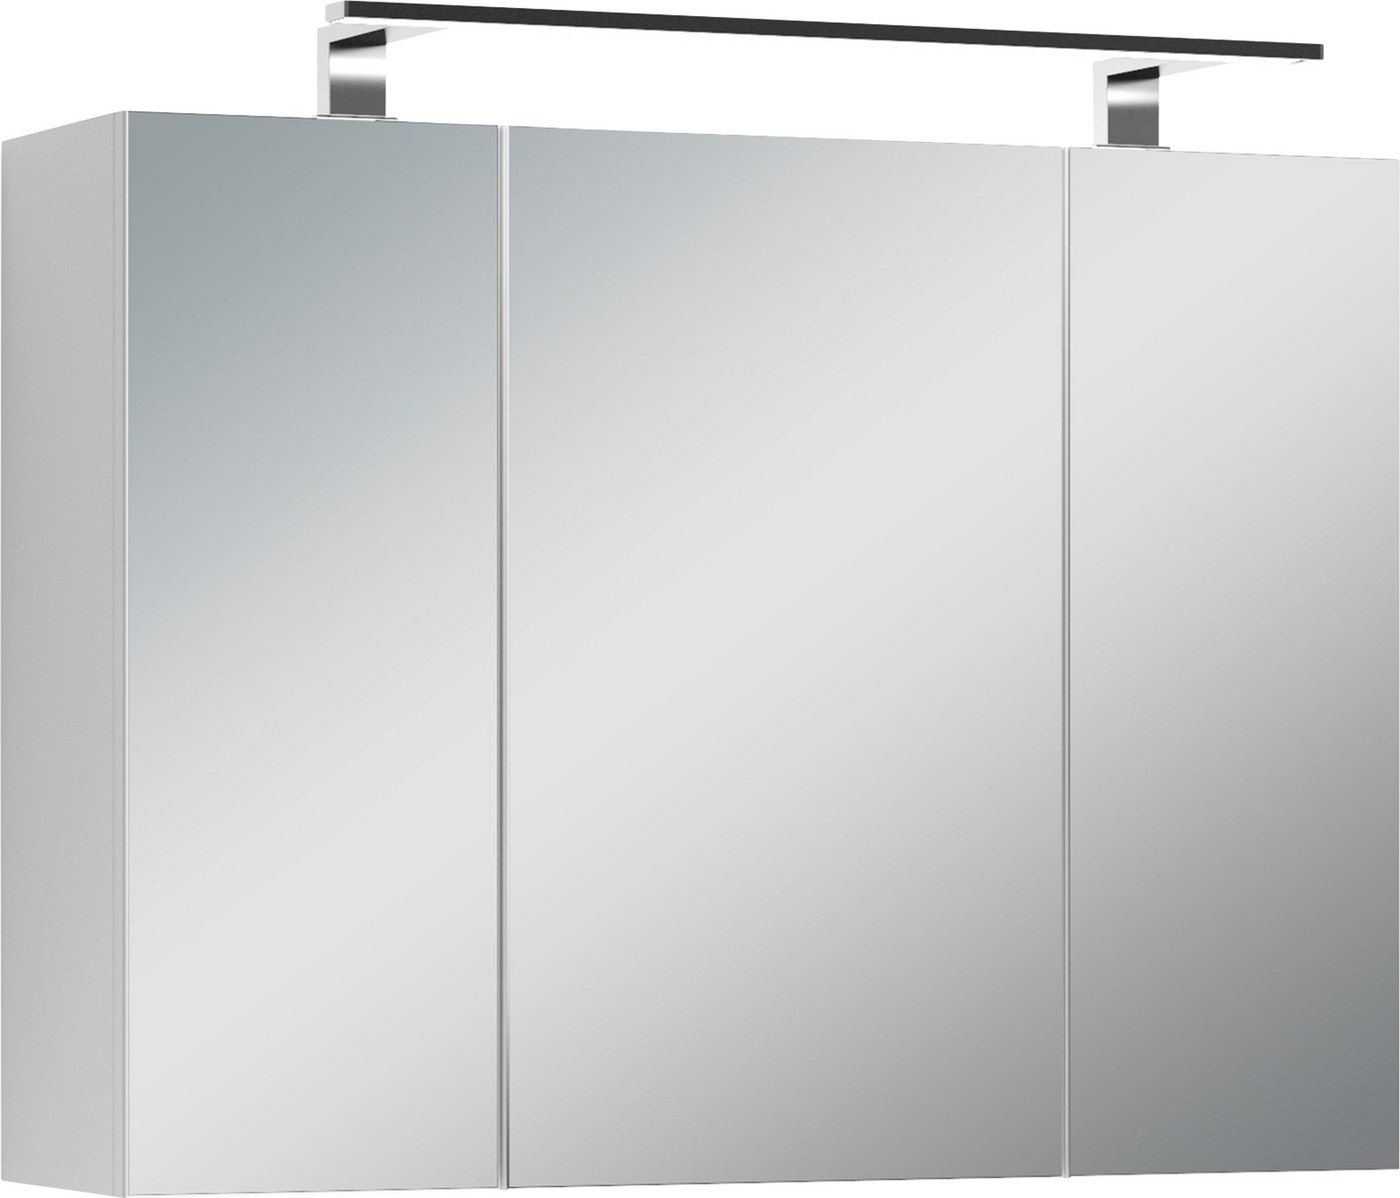 byLIVING Spiegelschrank Spree Breite 80 cm, 3-türig, mit LED Beleuchtung und Schalter-/Steckdosenbox von byLIVING